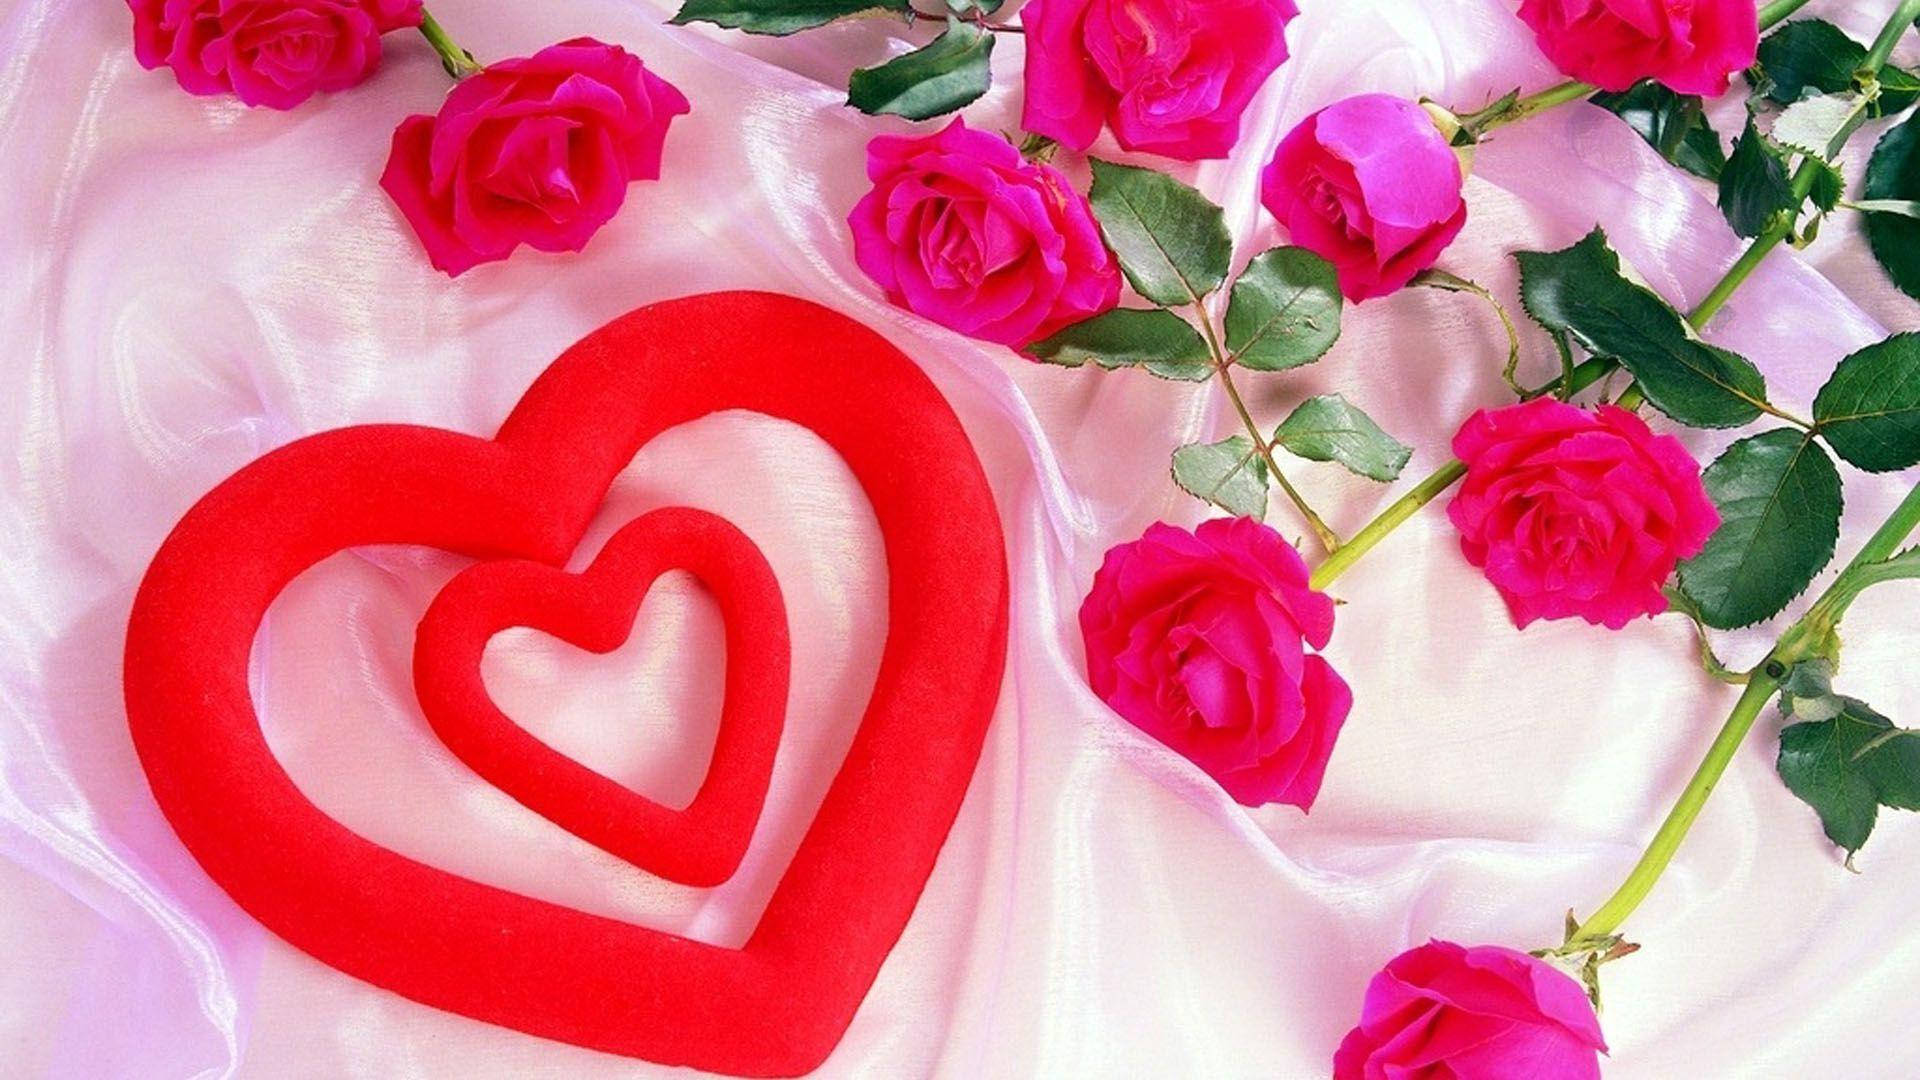 Love Rose Fabric Wallpaper